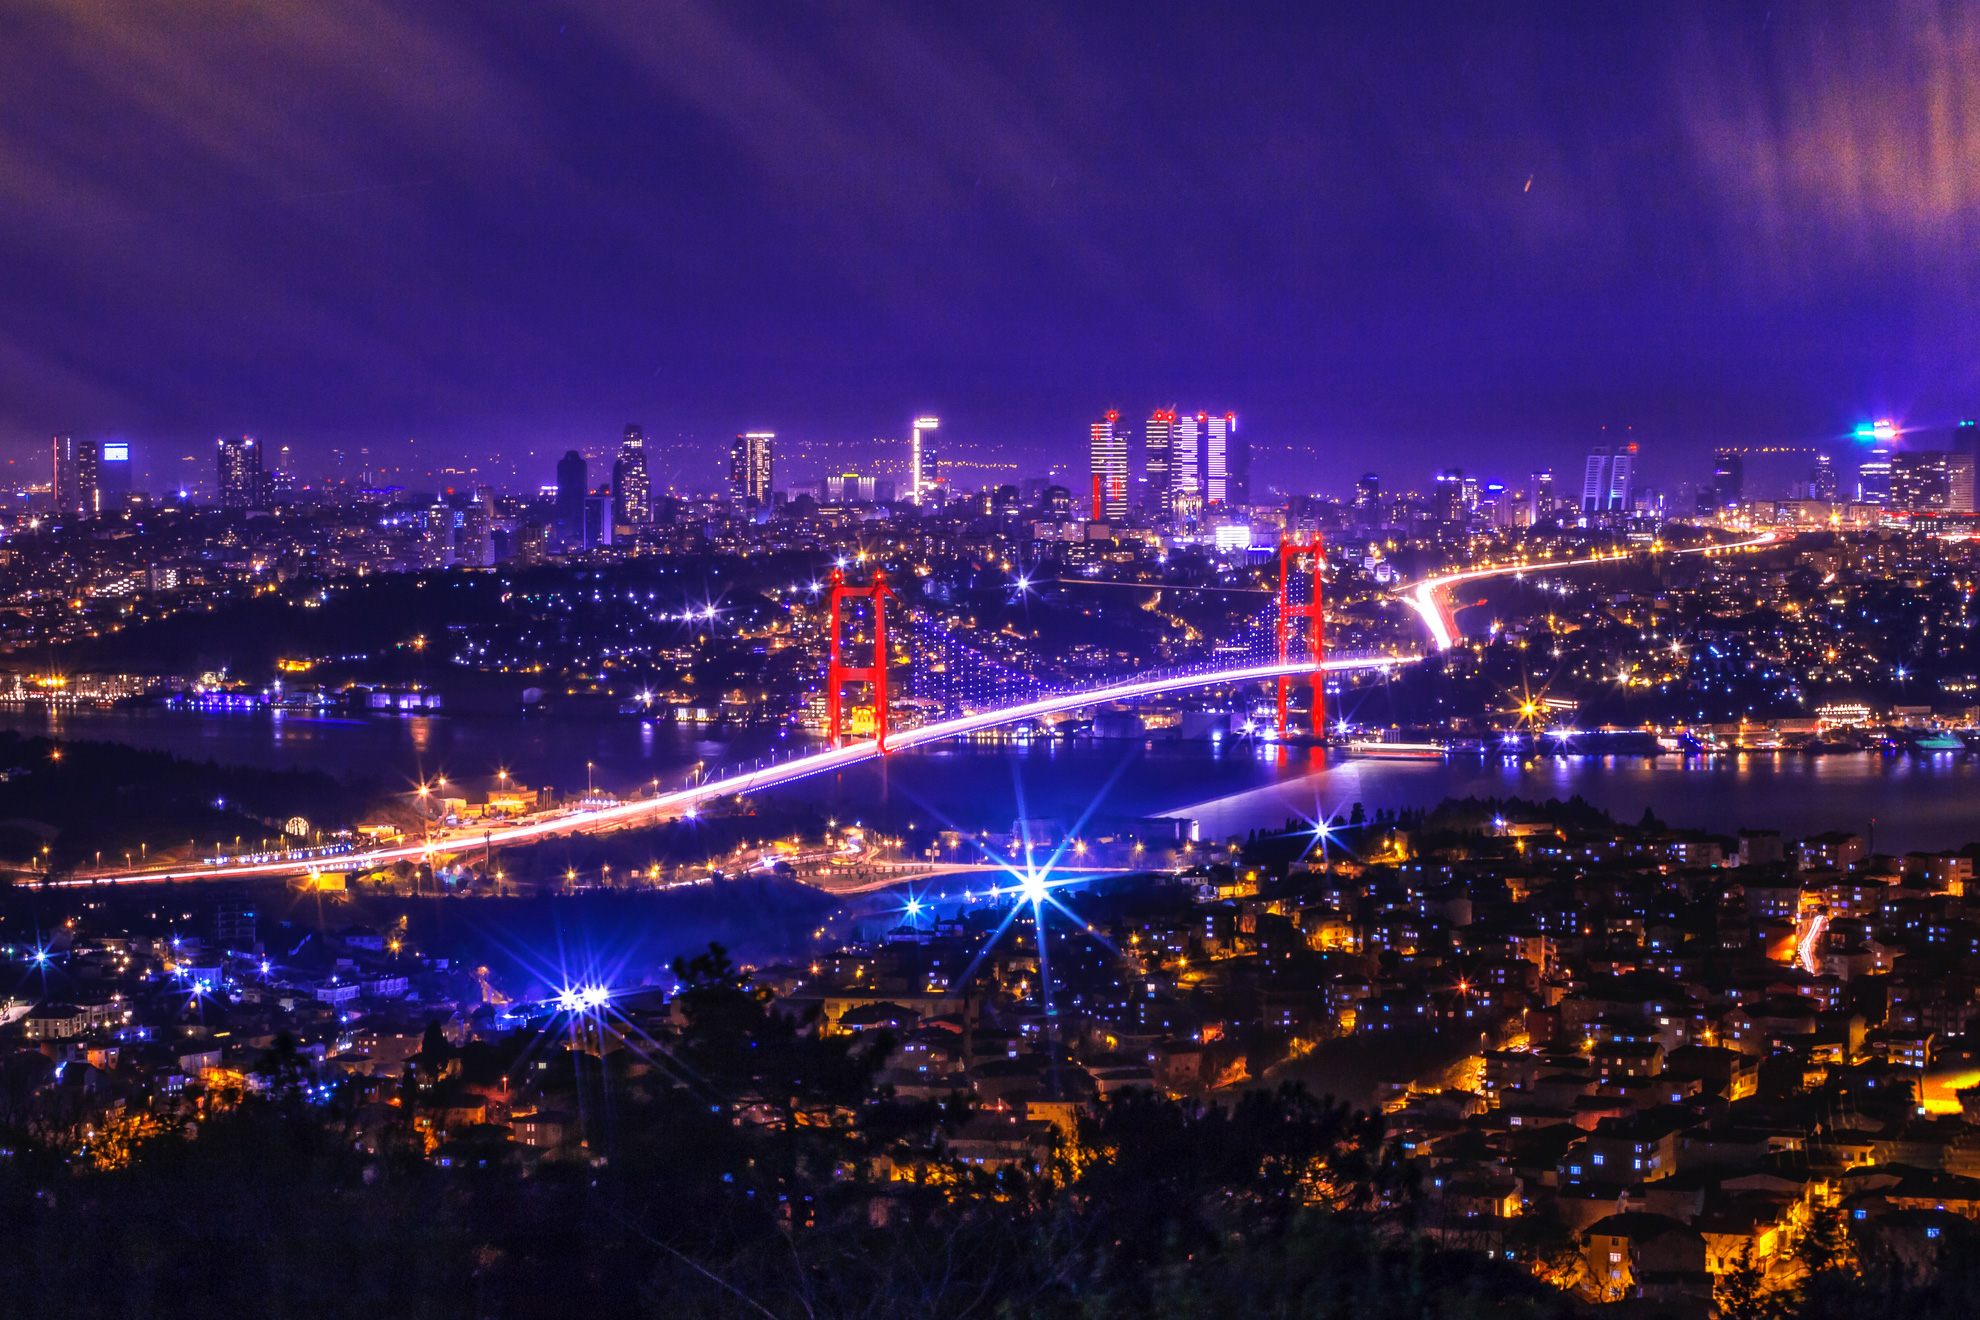 Фестивалът на лалето в Истанбул, 3 нощувки - Нощен Истанбул, Турция - Night Istanbul, Turkey